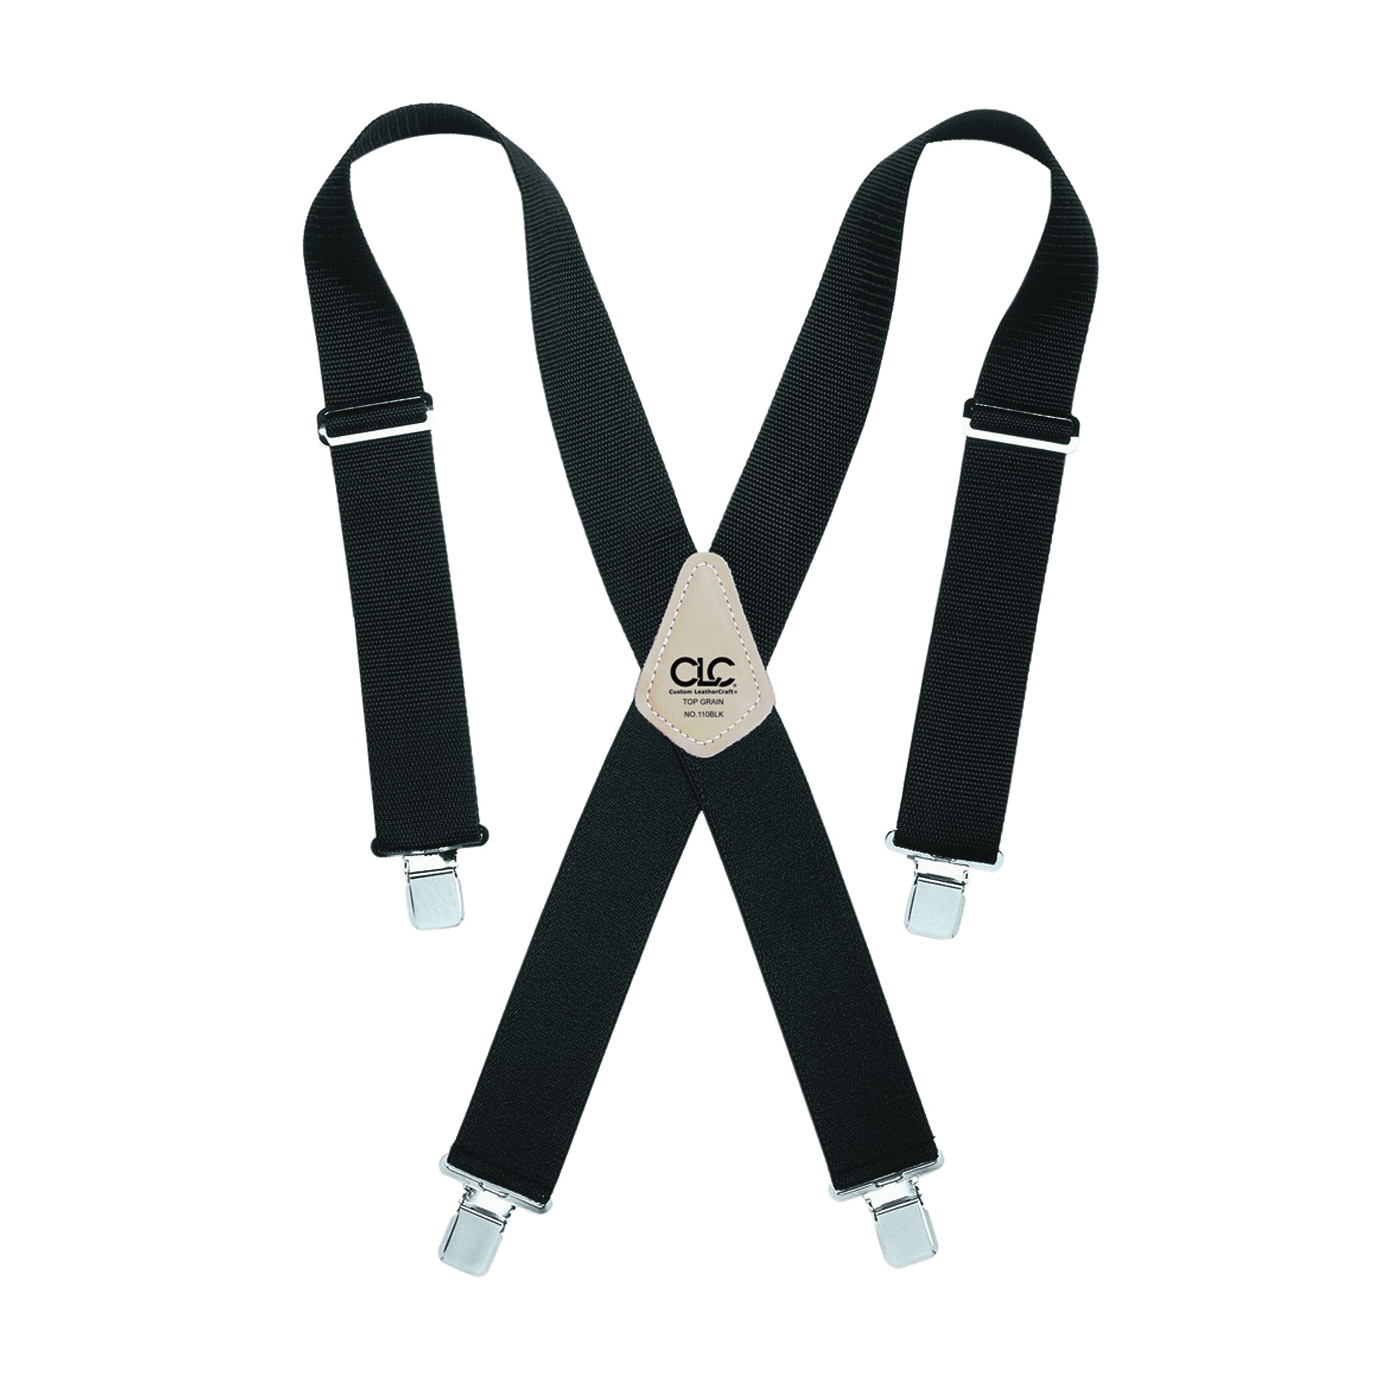 Tool Works Series 110BLK Work Suspender, Nylon, Black